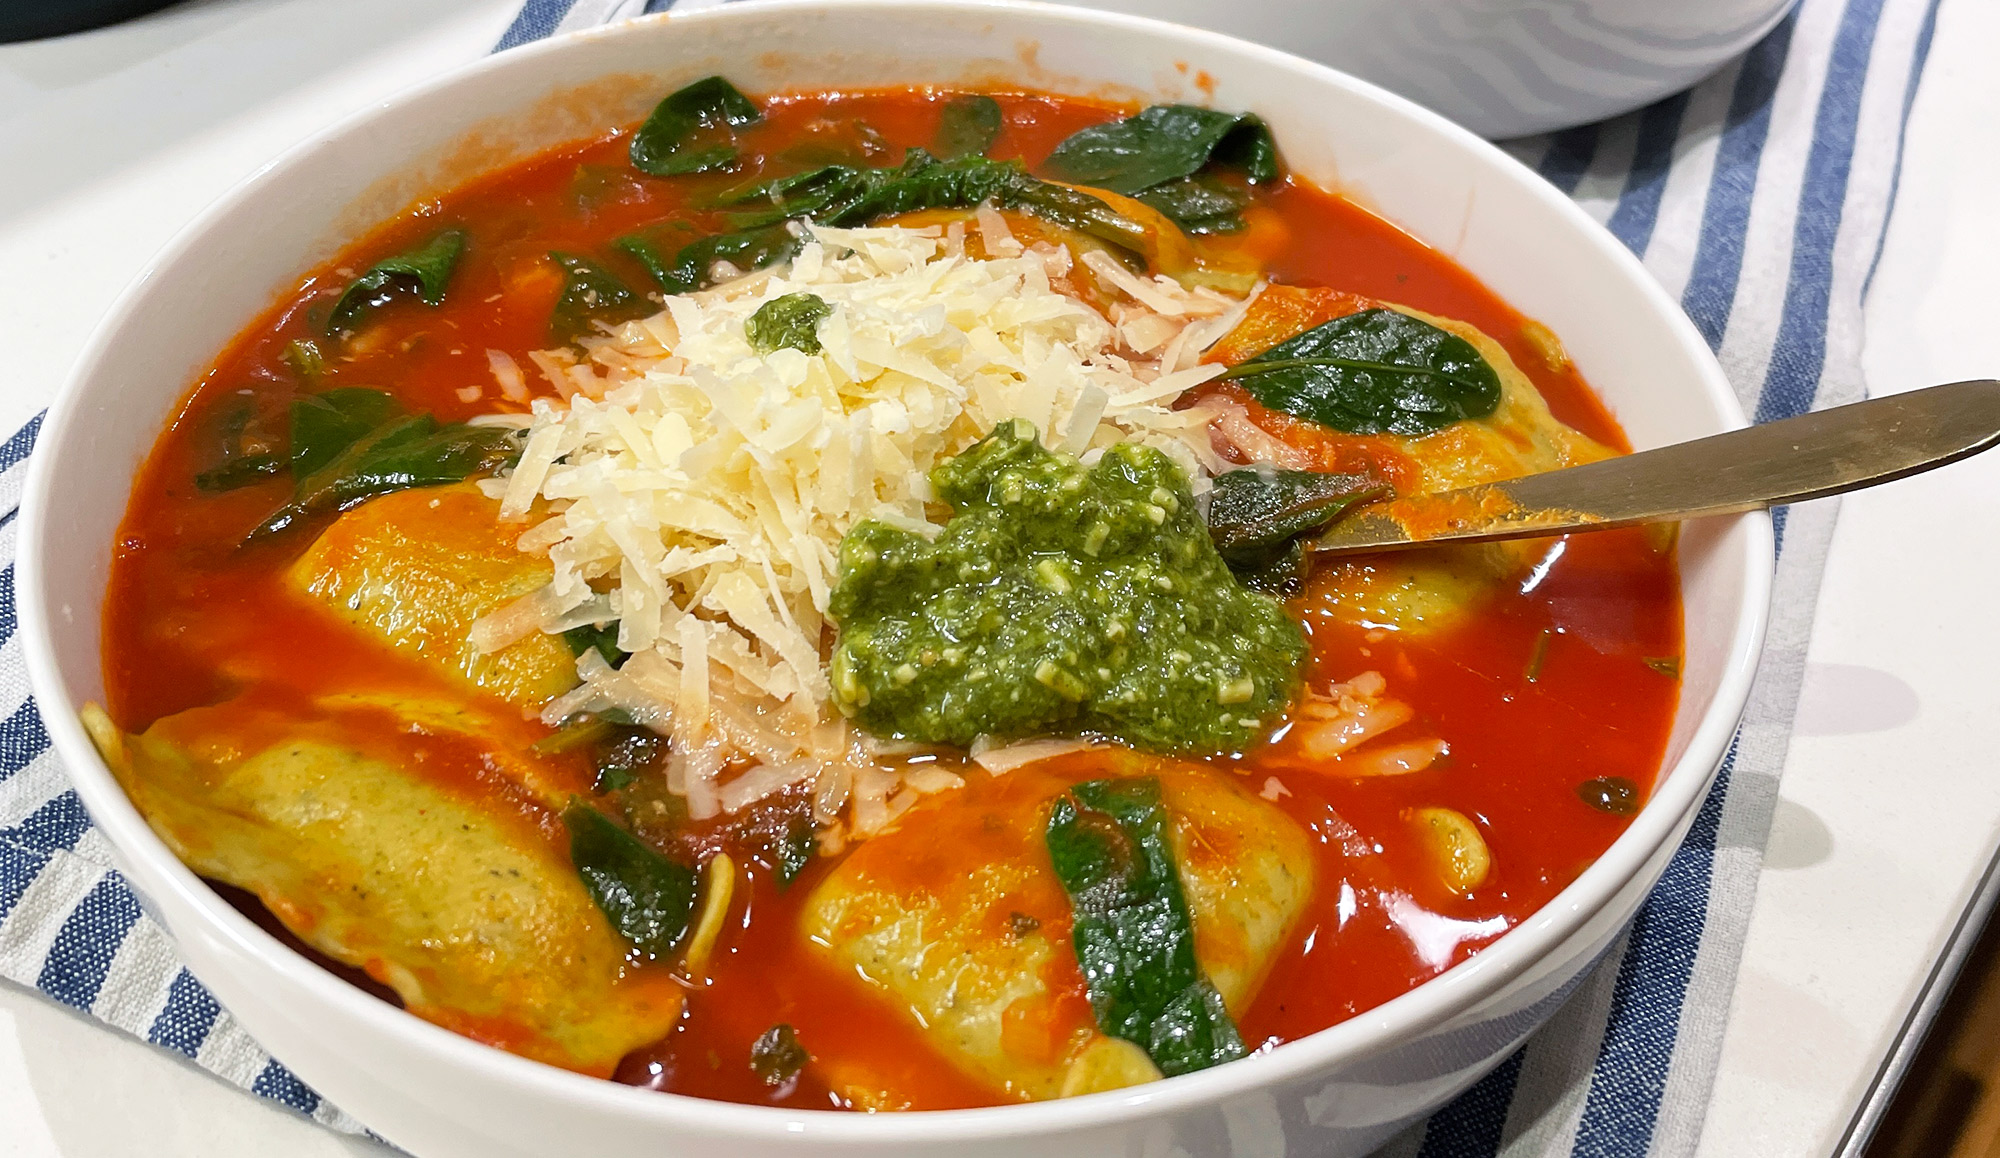 Ravioli soep met pesto en parmezaan - Gewoon wat een stu...